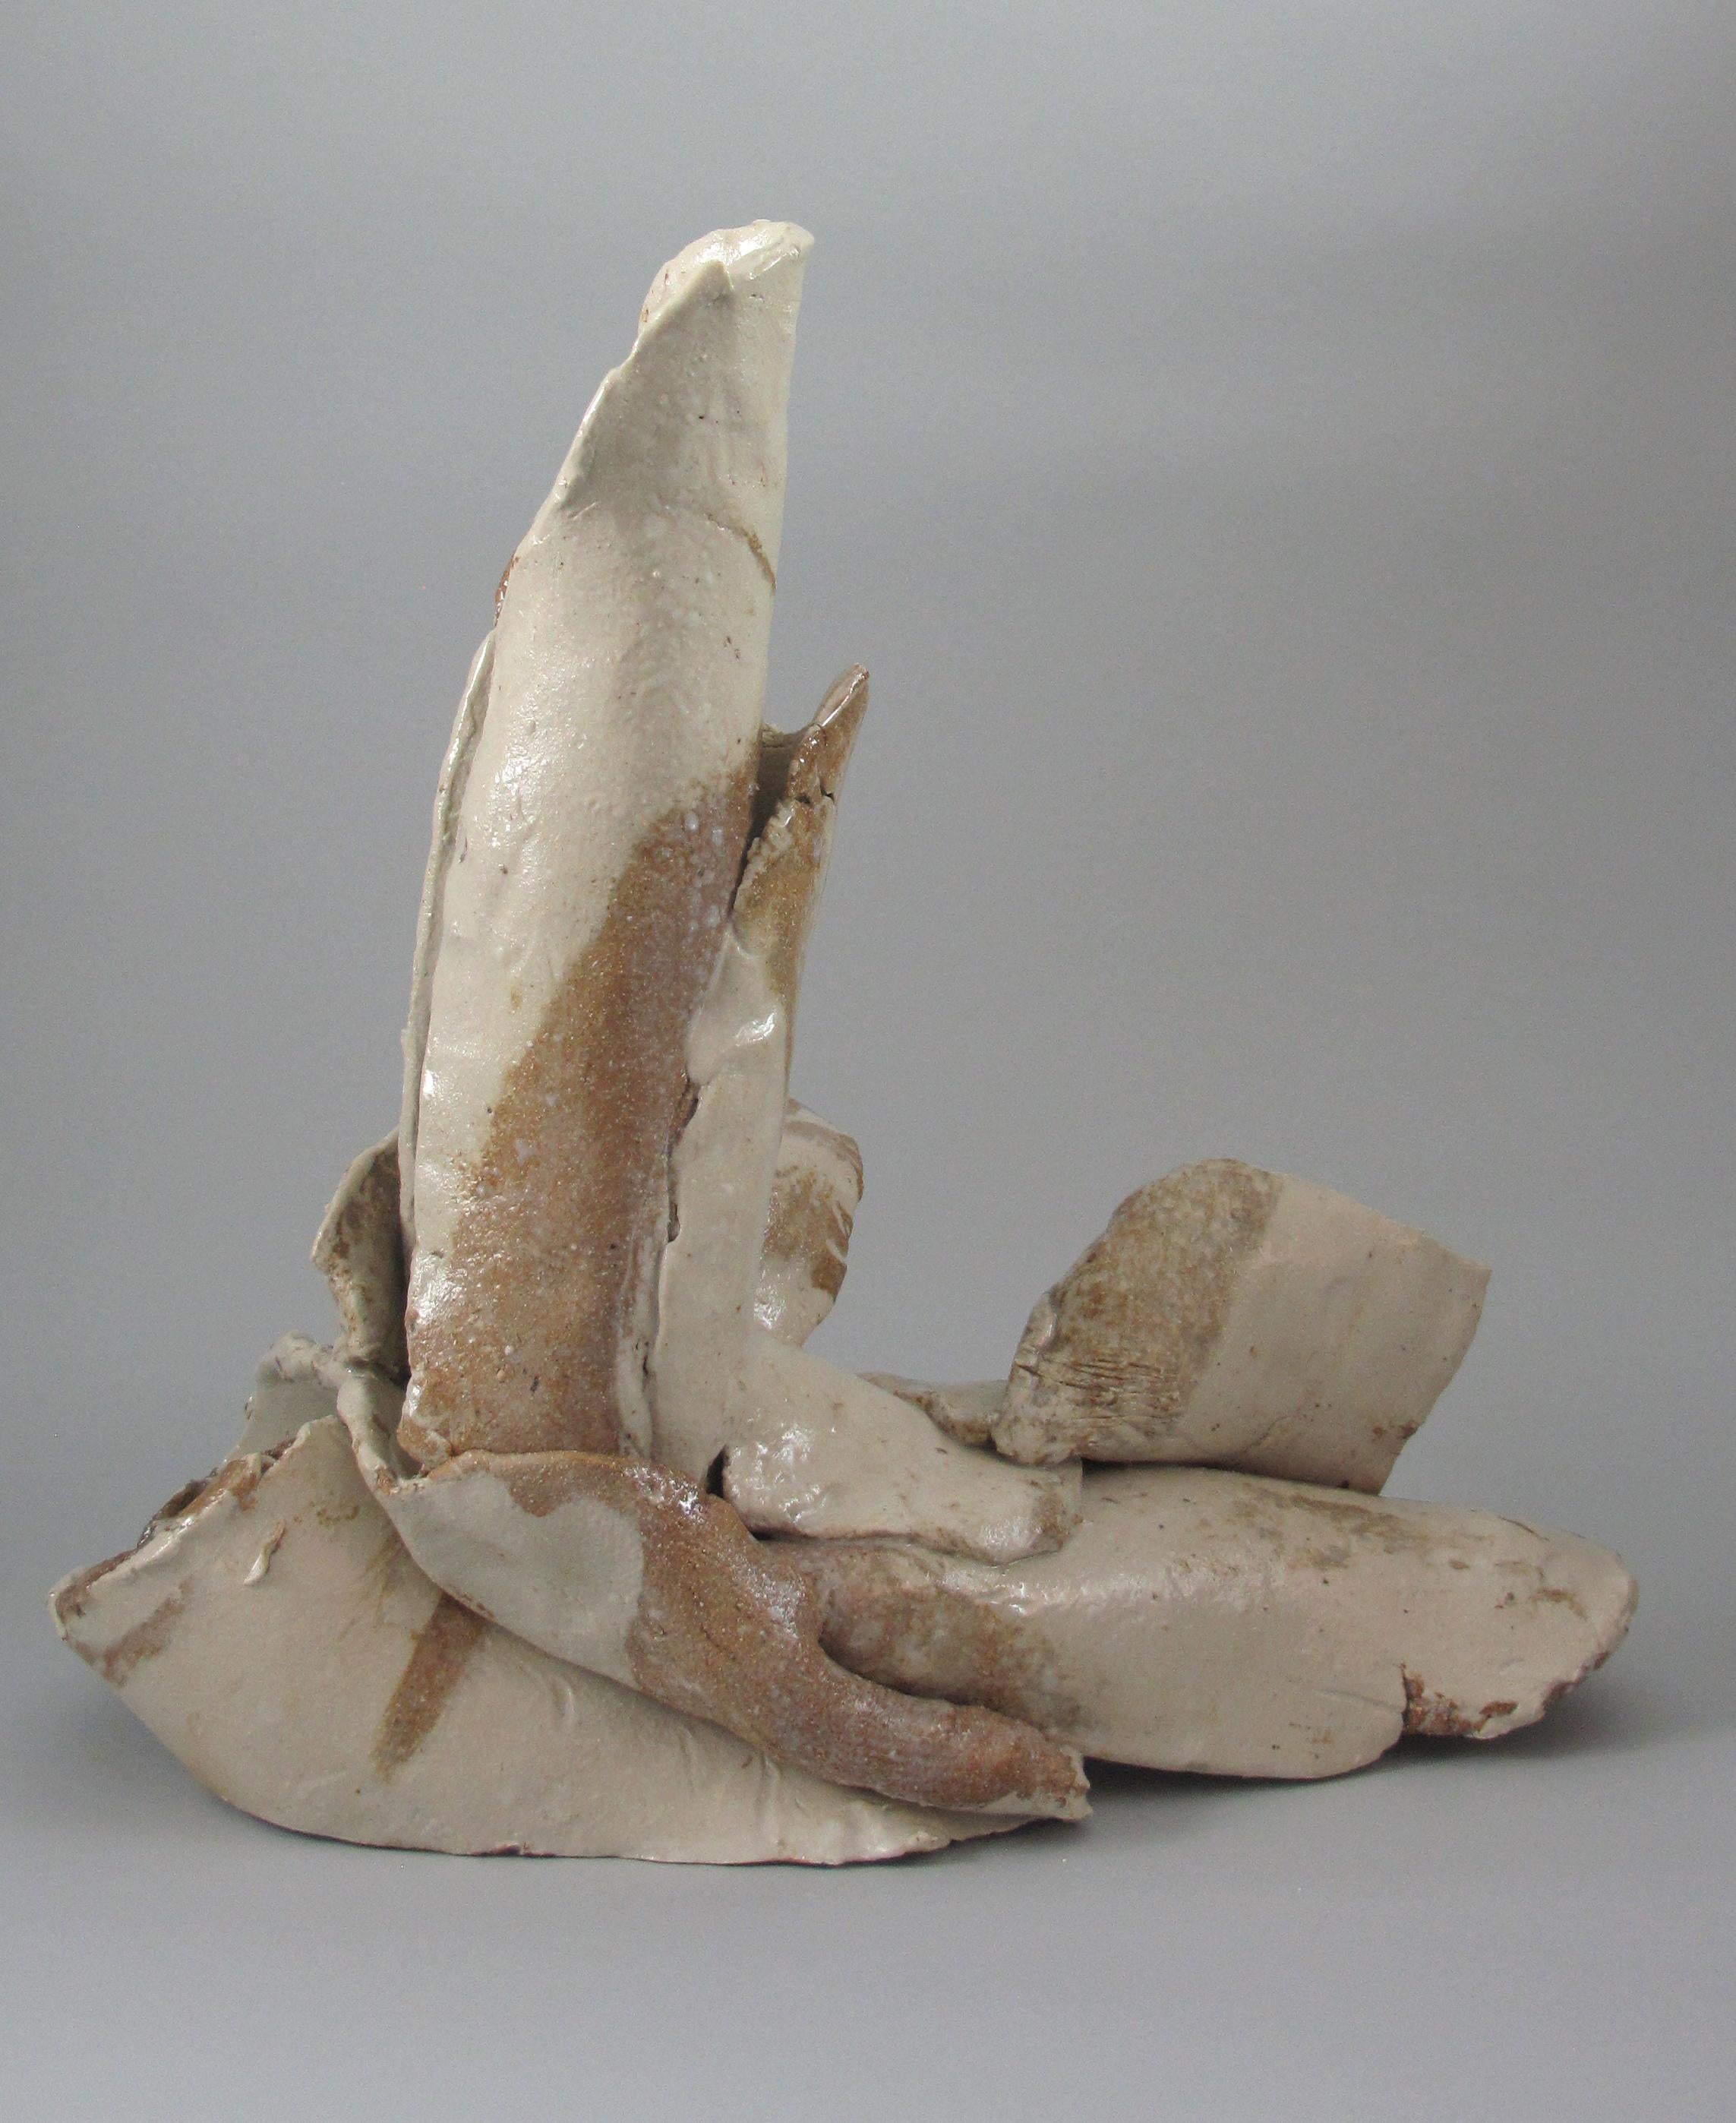 Sara Fine-Wilson Abstract Sculpture - "Fragment", gestural, ceramic, sculpture, white, brown, stoneware